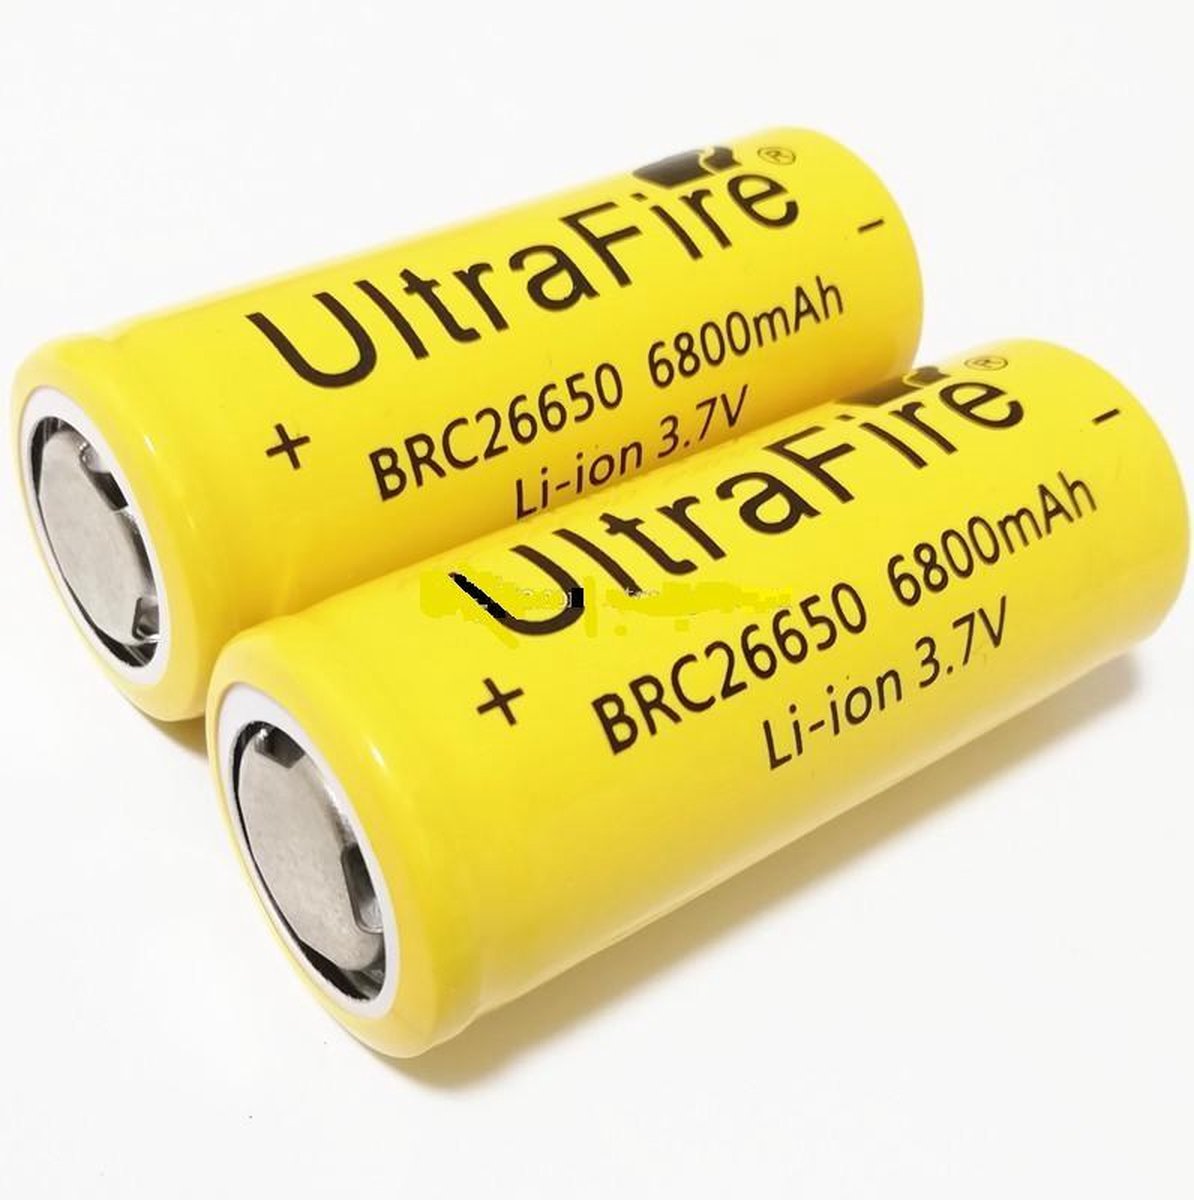 2x UltraFire 26650 6800mAh Oplaadbare Li-ion Batterij | bol.com